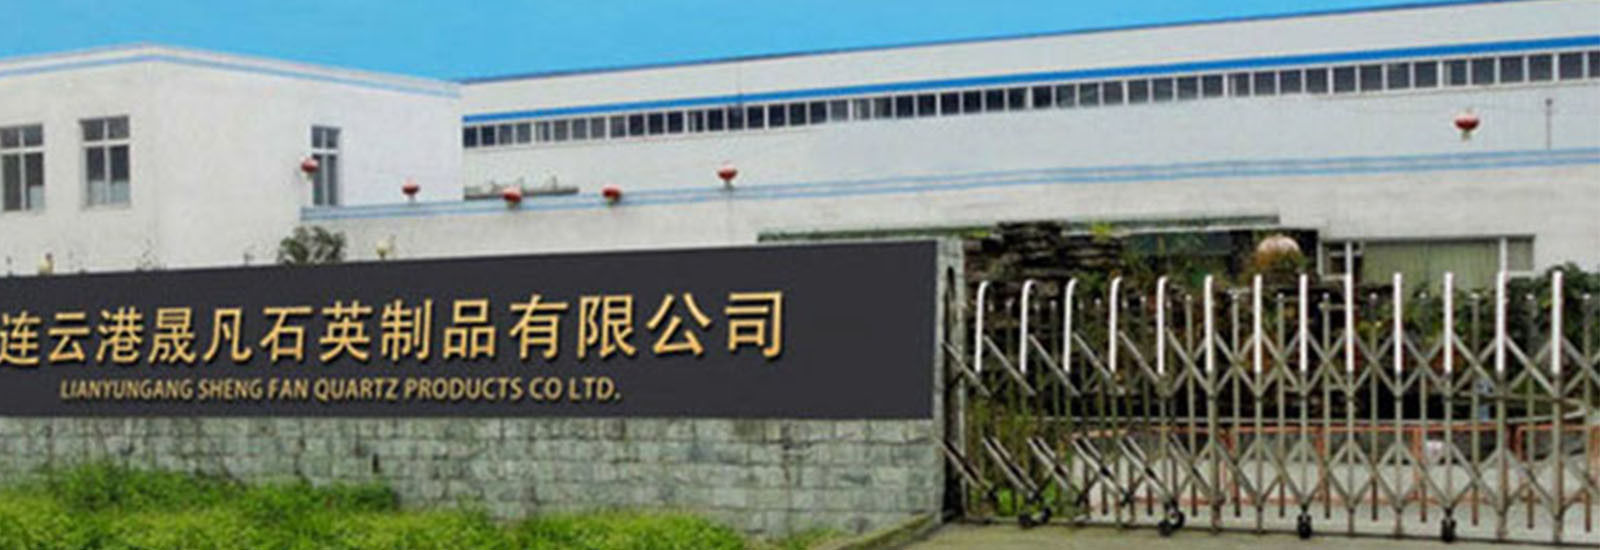 ΚΙΝΑ Lianyungang Shengfan Quartz Product Co., Ltd Εταιρικό Προφίλ